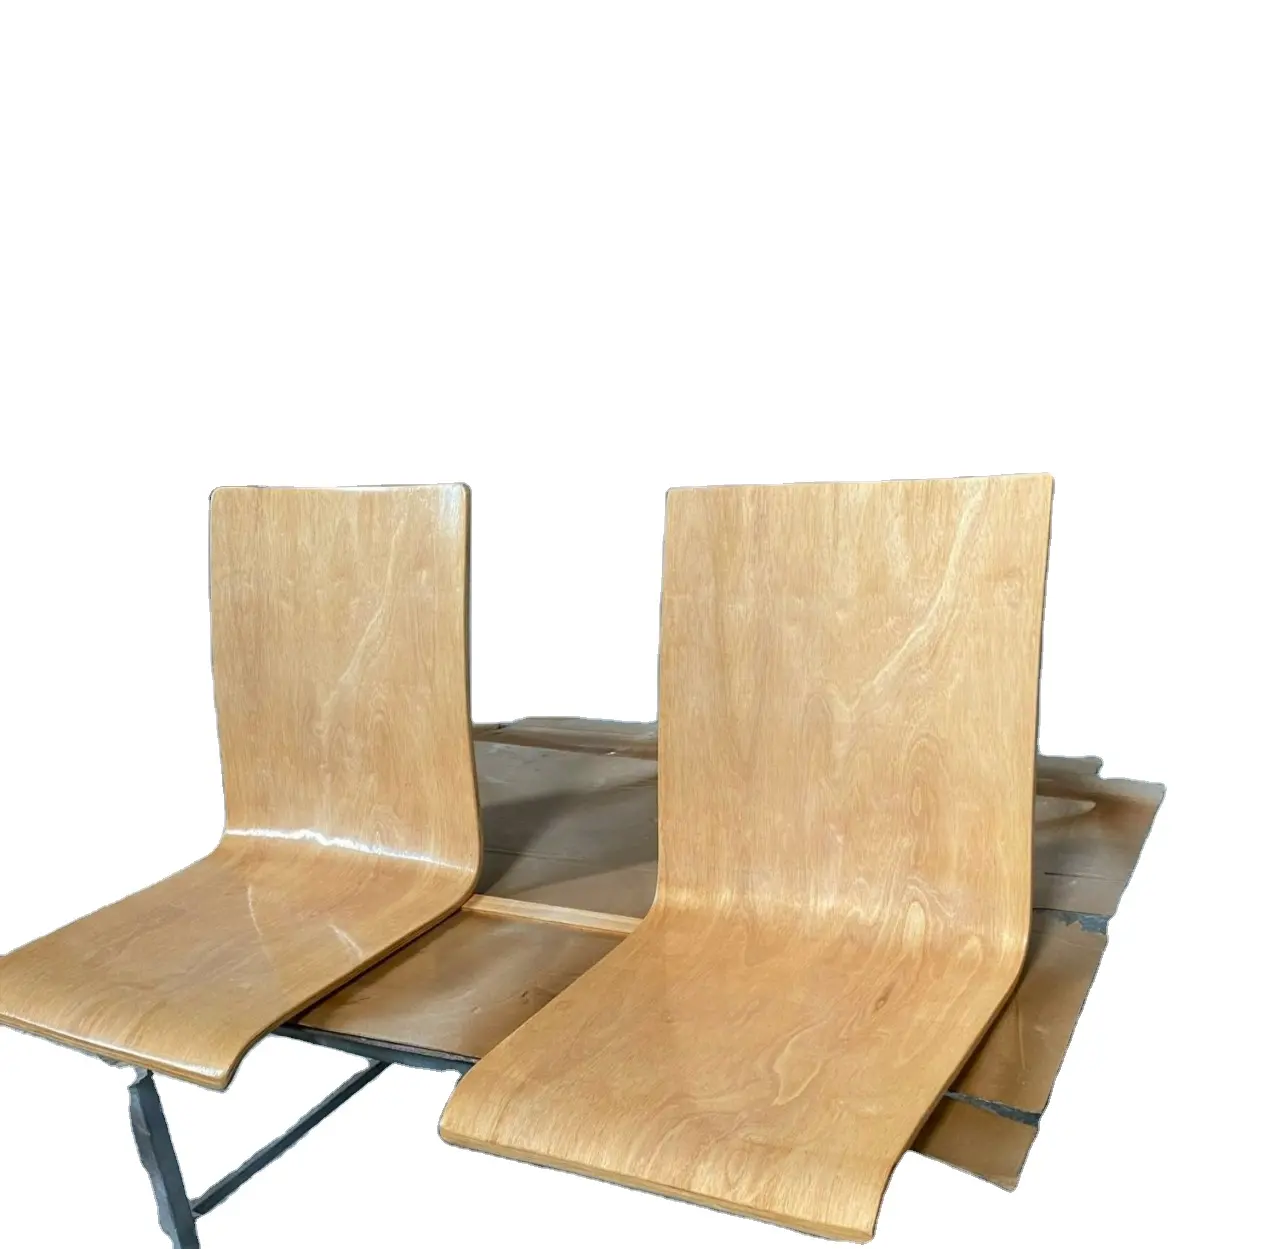 Alta qualità impiallacciatura curvo sedia VN compensato curvo sedie prezzo di fabbrica direttamente personalizzato CNC curvo prezzo di fabbrica direttamente